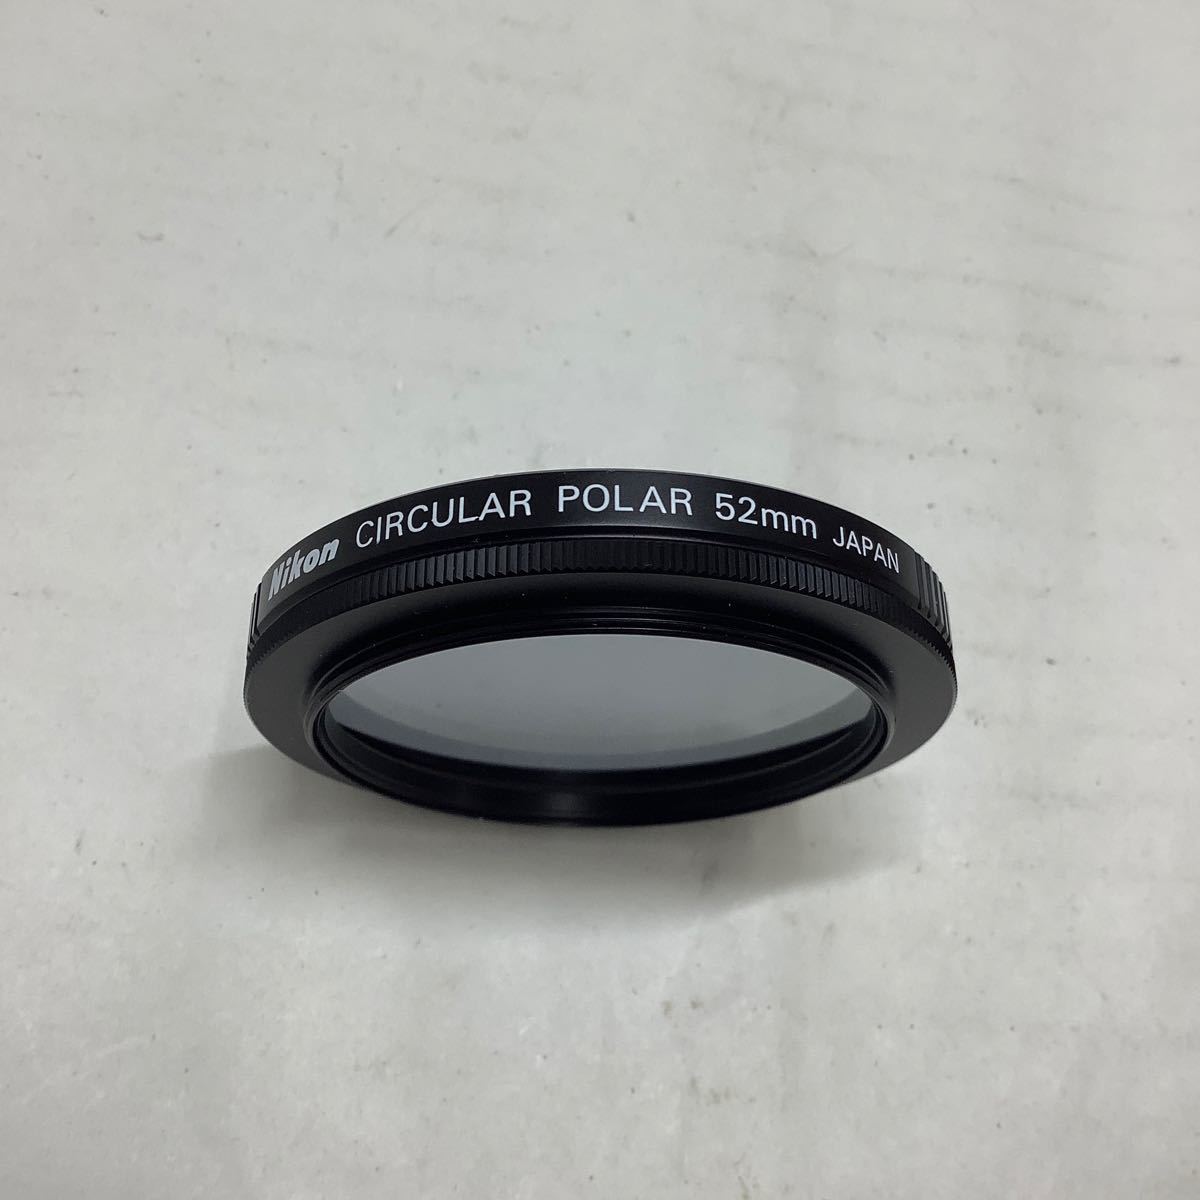 現状品/返品不可 カメラフィルター Nikon CIRCULAR POLAR 52mm #j01843 j3の画像3